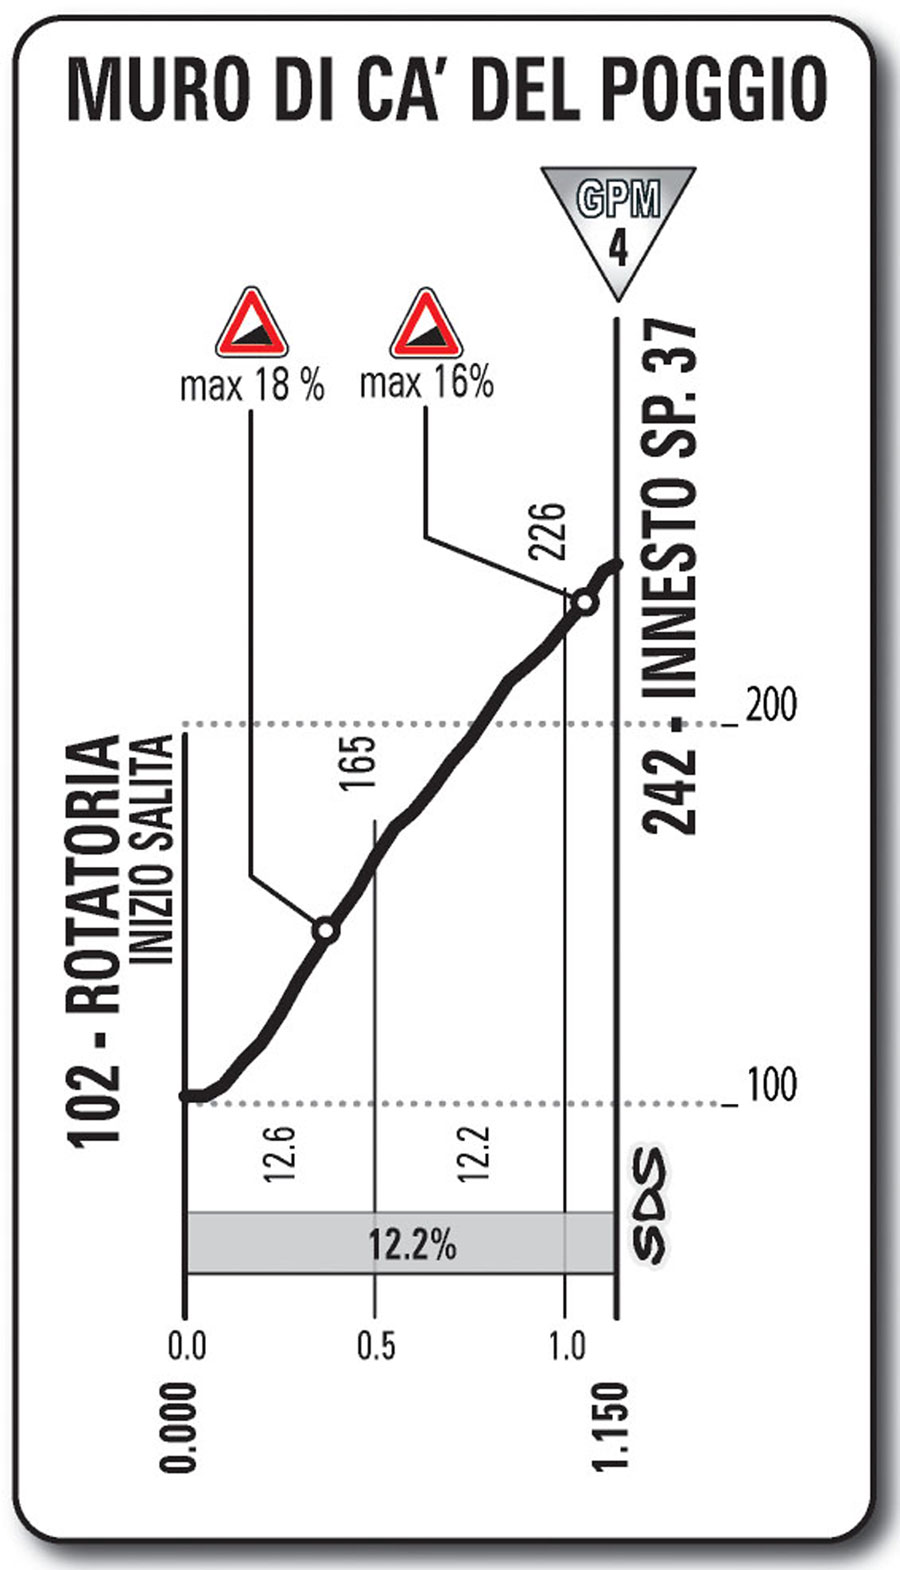 Giro d'Italia 2013 stage 12, Muro di ca' del Poggio profile